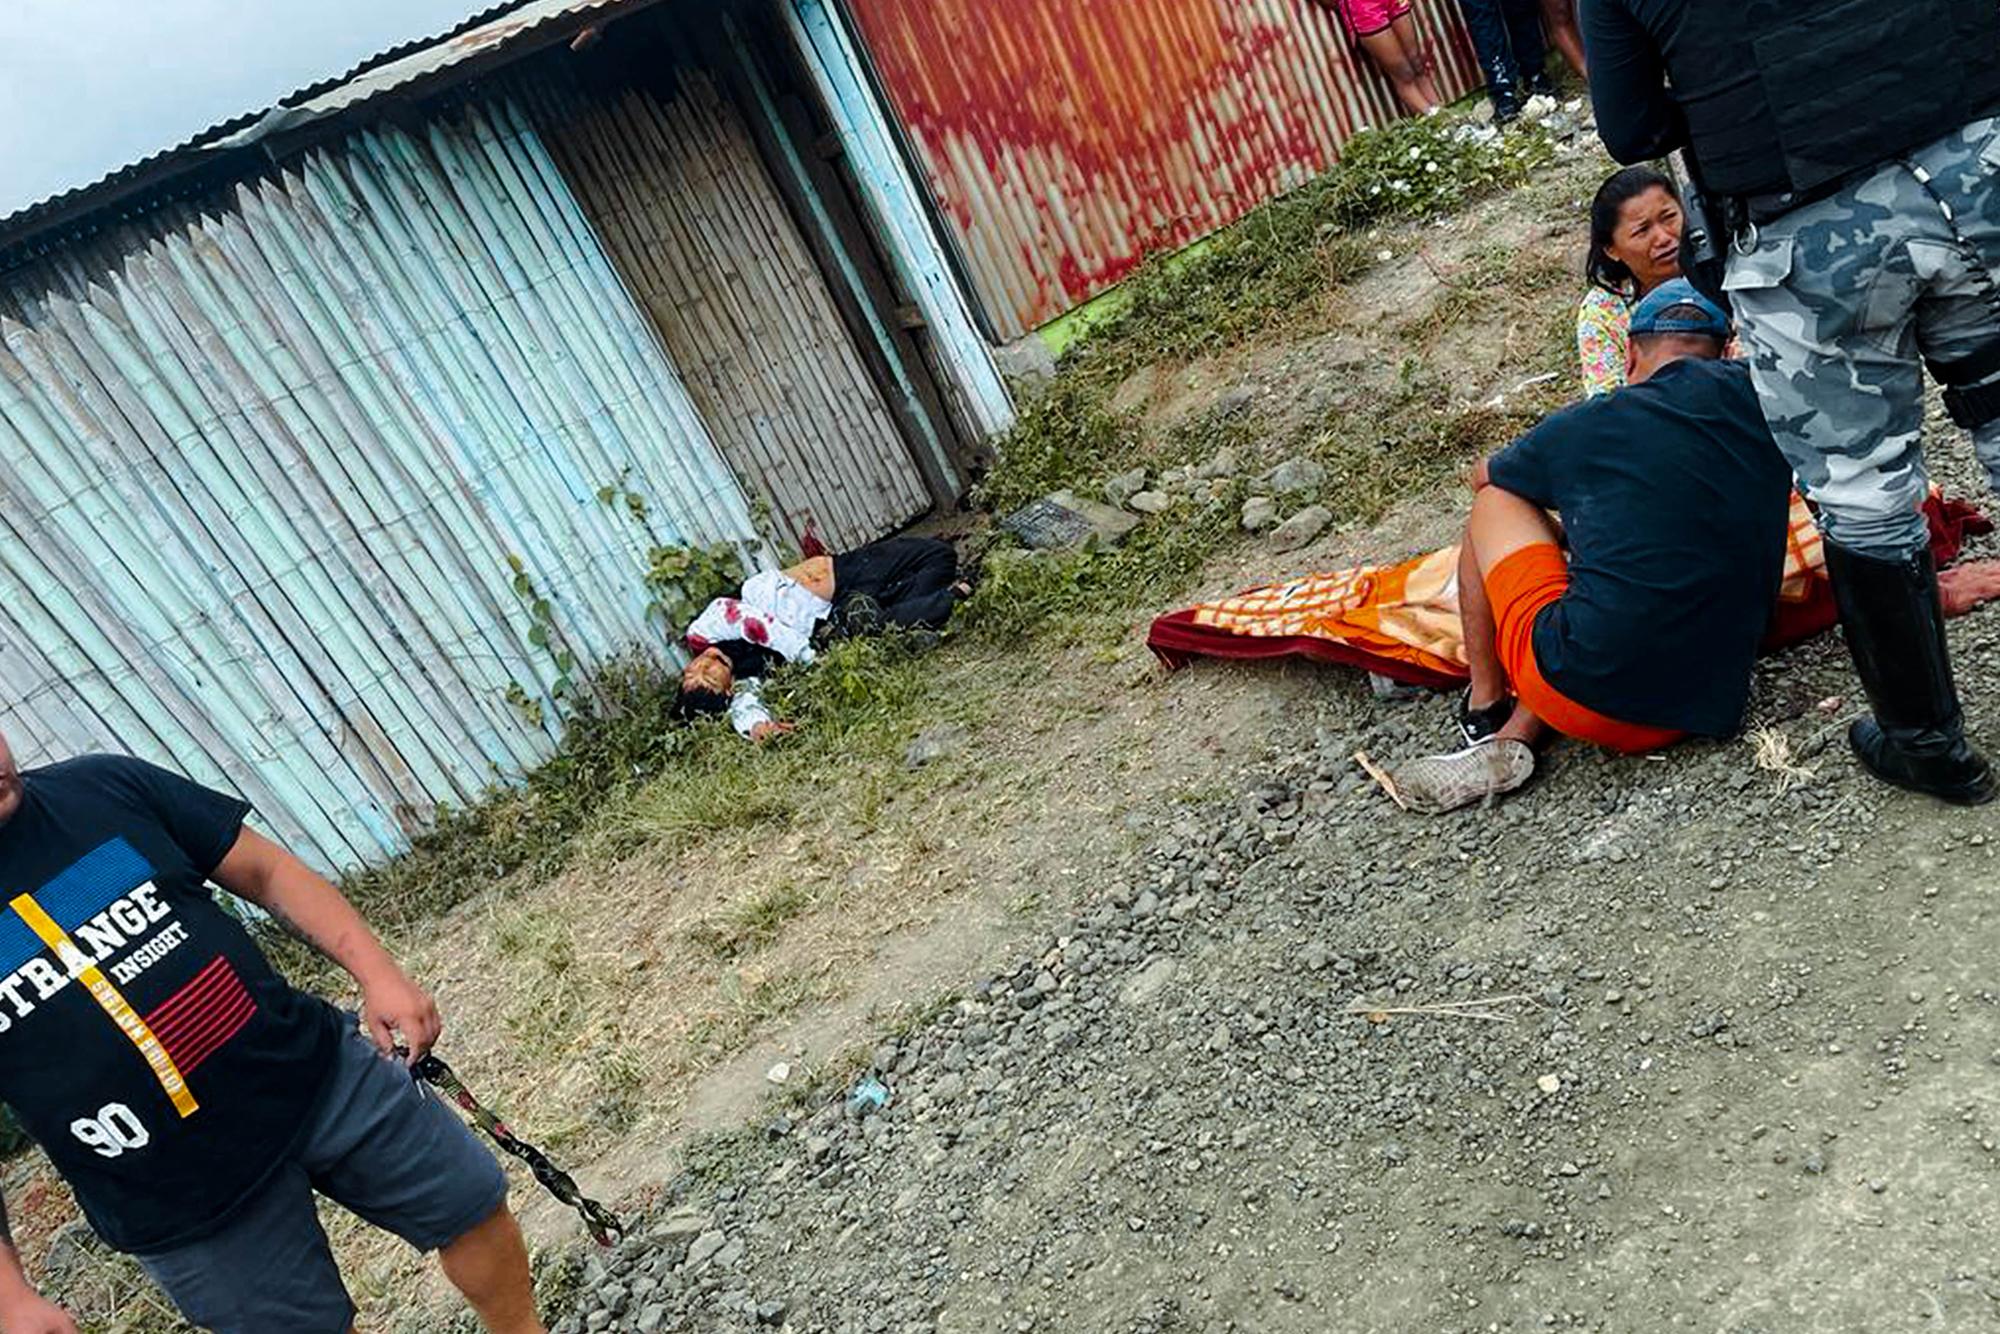 Las víctimas del sicariato se acumulan en las zonas más deprimidas de Ecuador. / Policía Nacional del Ecuador.